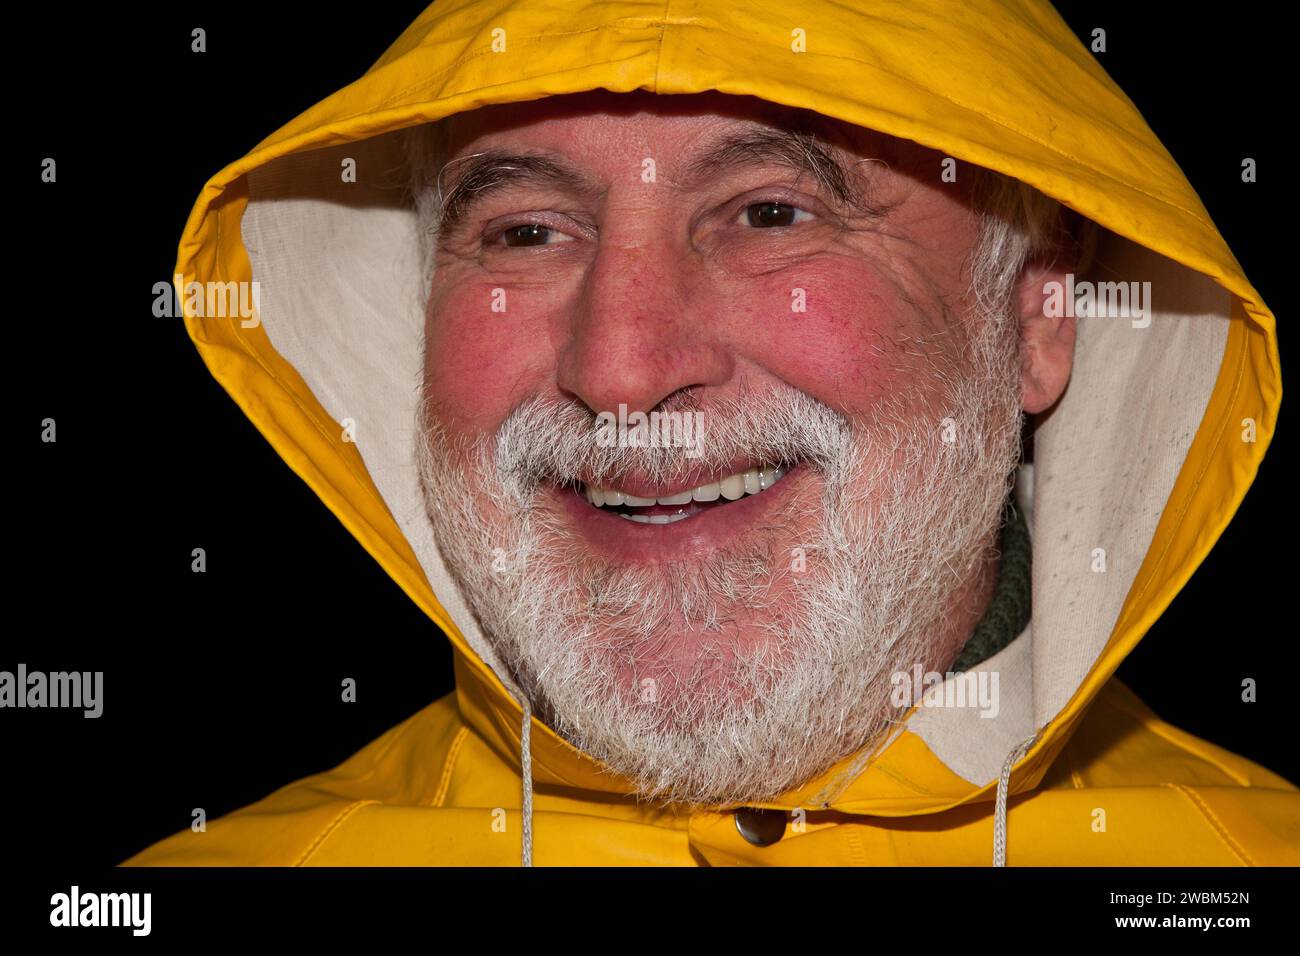 Le vieux pêcheur à la barbe frissonnée, à la veste de pluie jaune et à la capuche rit, tandis que les rides autour de ses yeux révèlent une histoire de vie pleine d'expériences. Banque D'Images